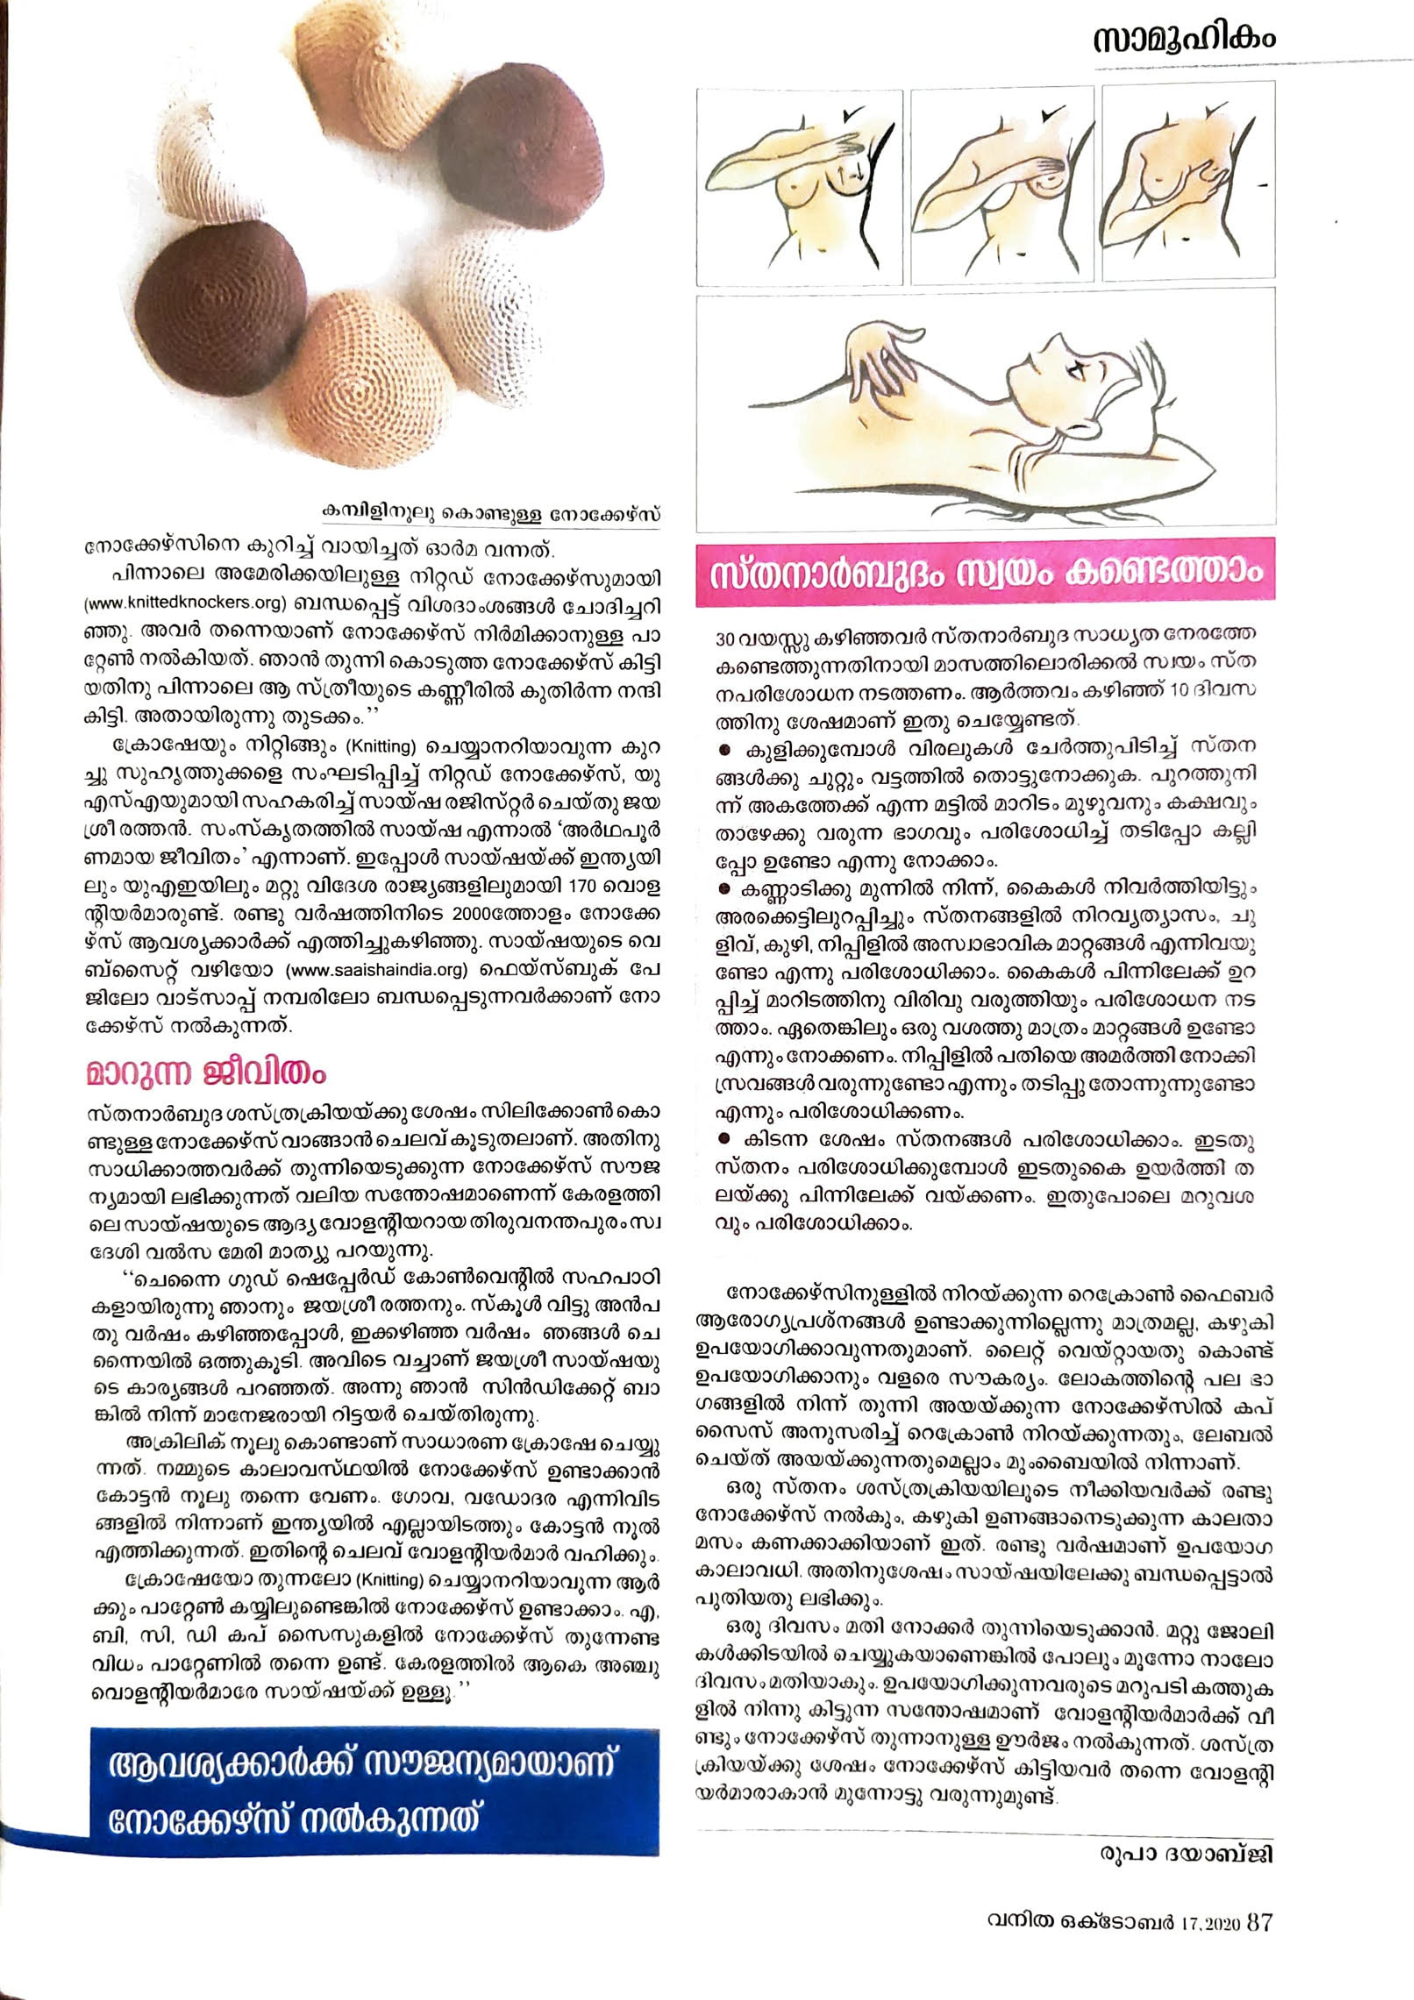 Vanitha Magazine 3 Oct 20 pg 2